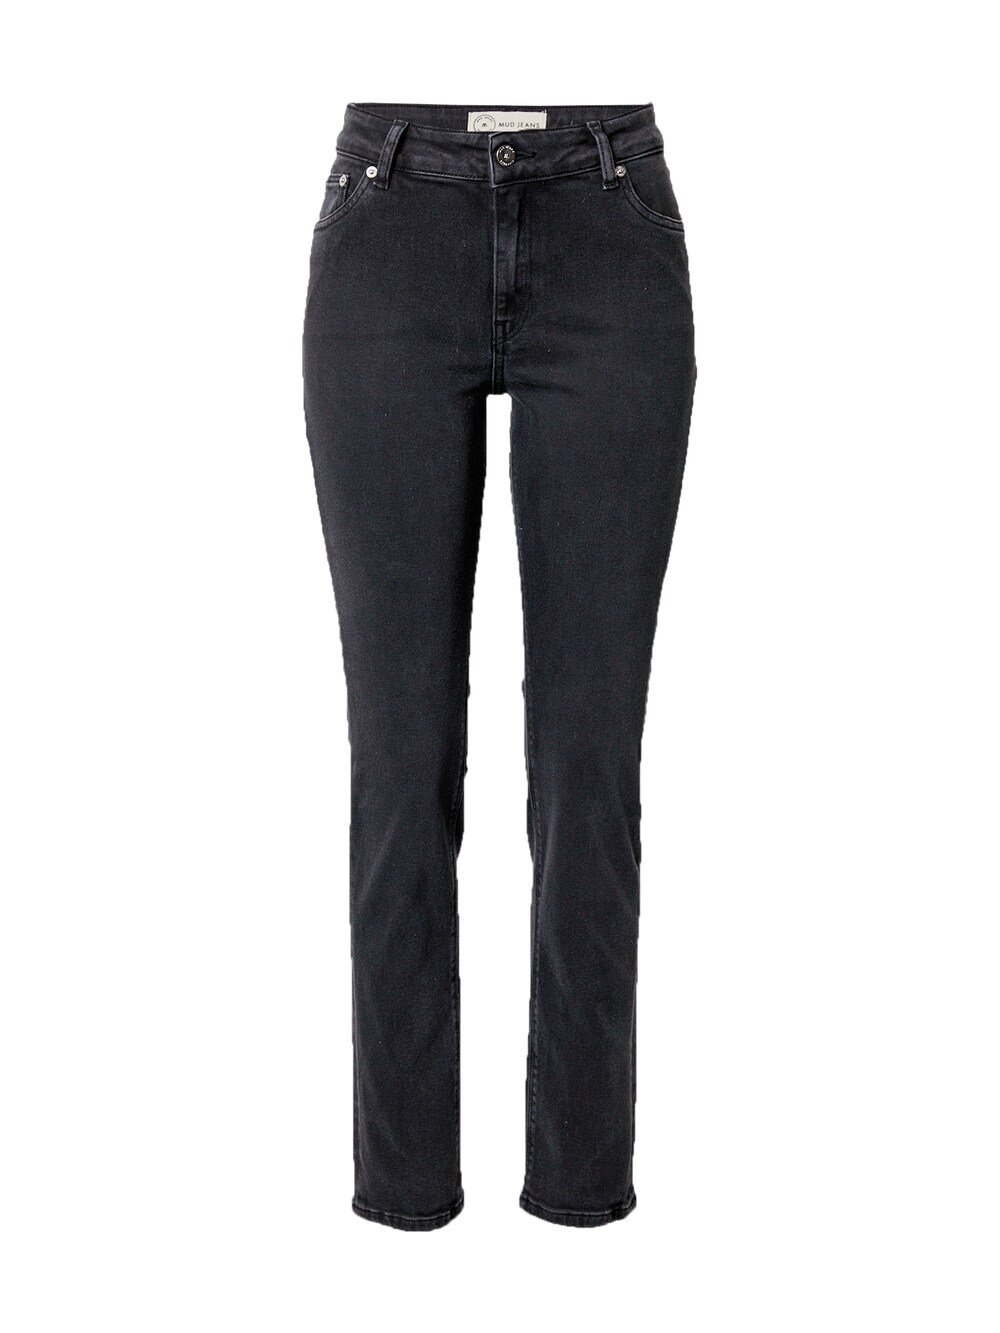 Обычные джинсы Mud Jeans Swan, черный